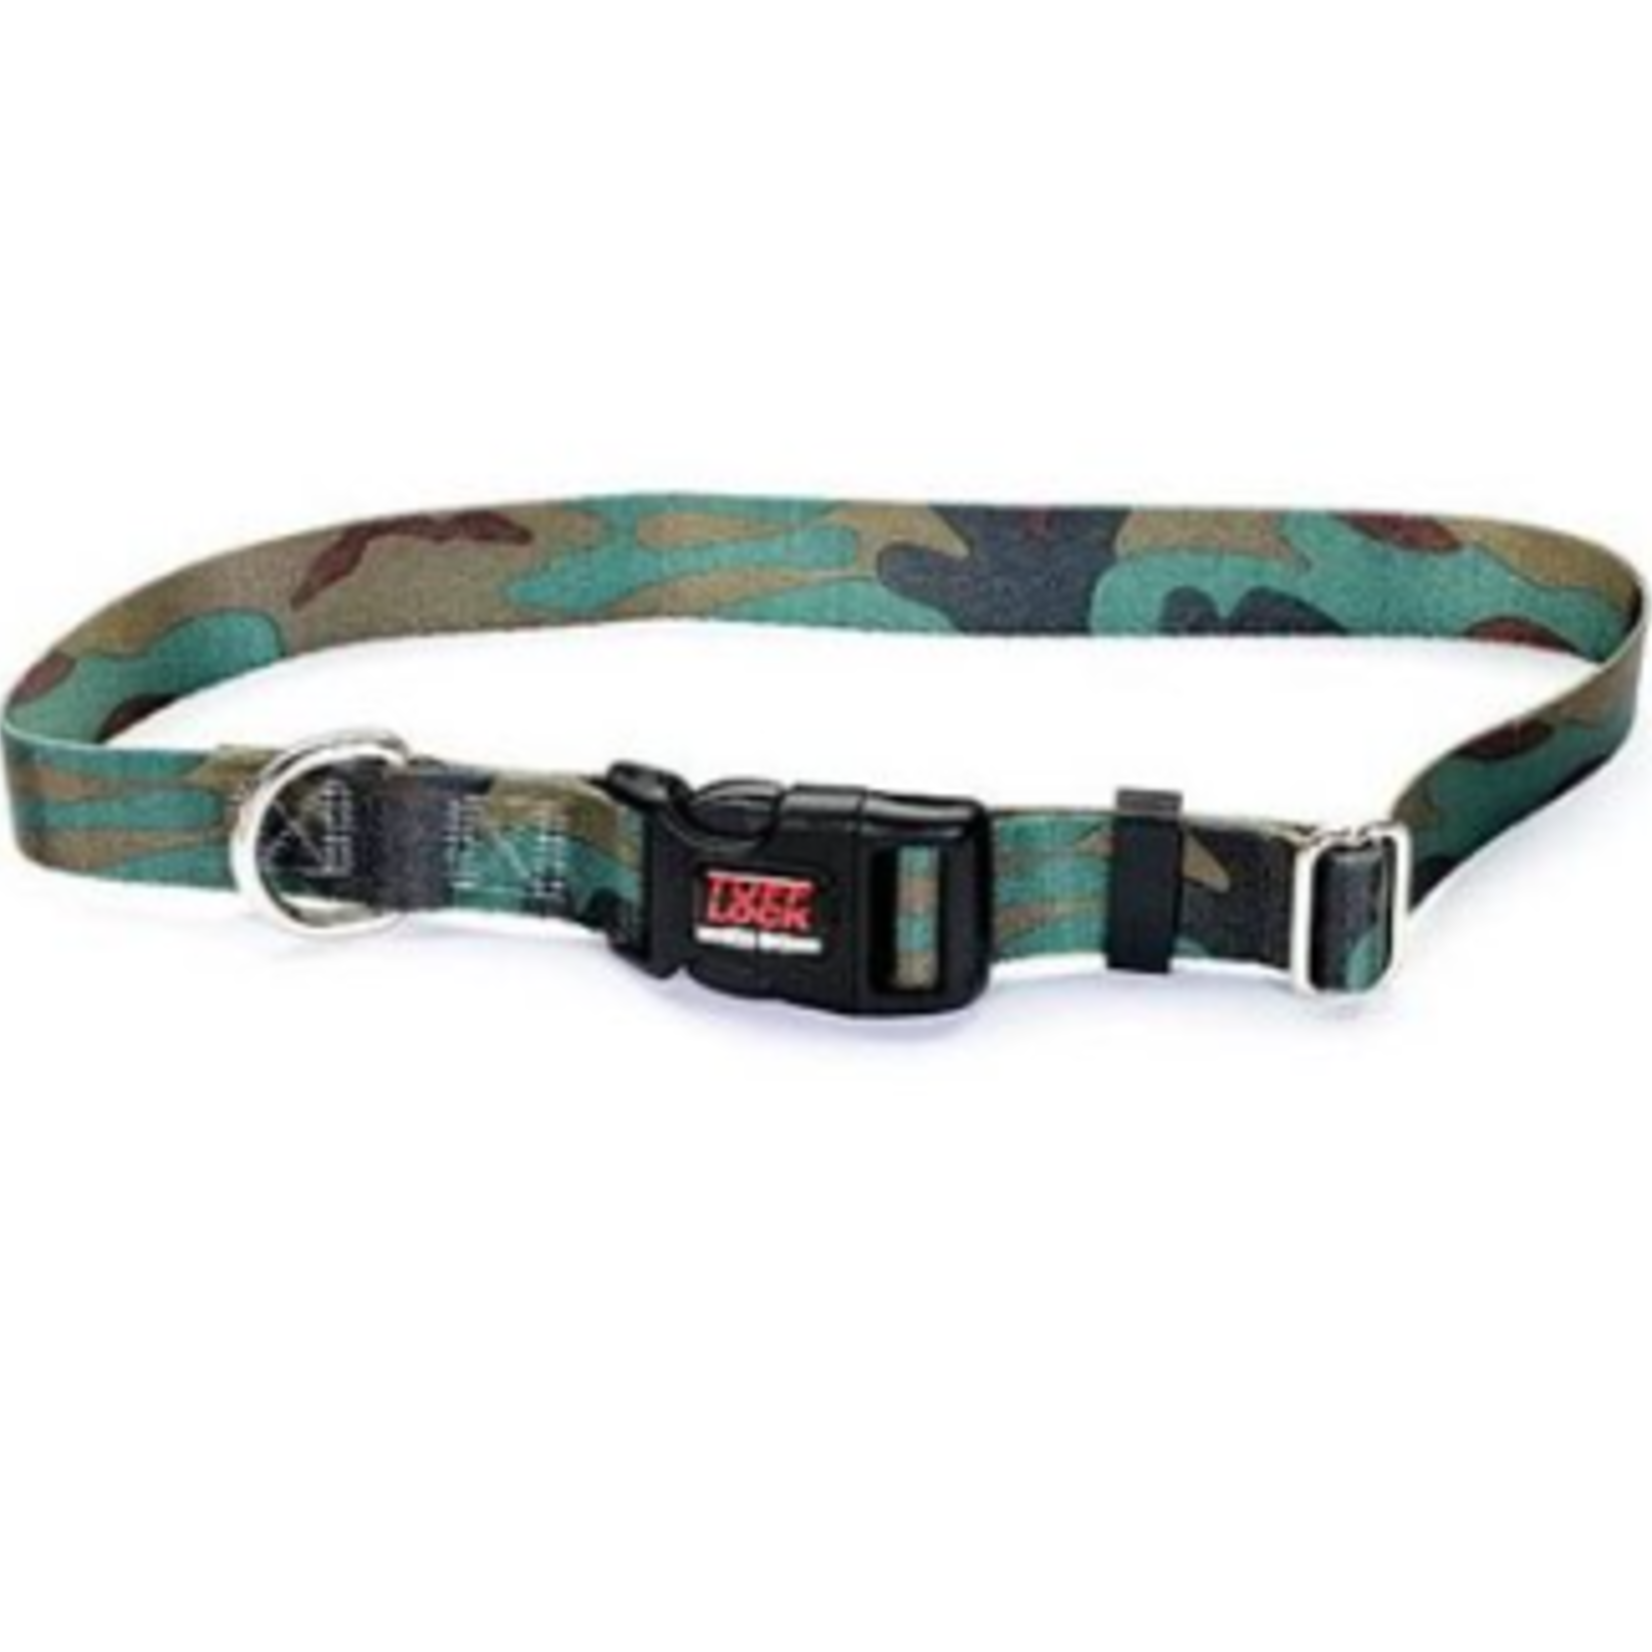 Reflex Collar - 1 in x 16-25 in - Camouflage